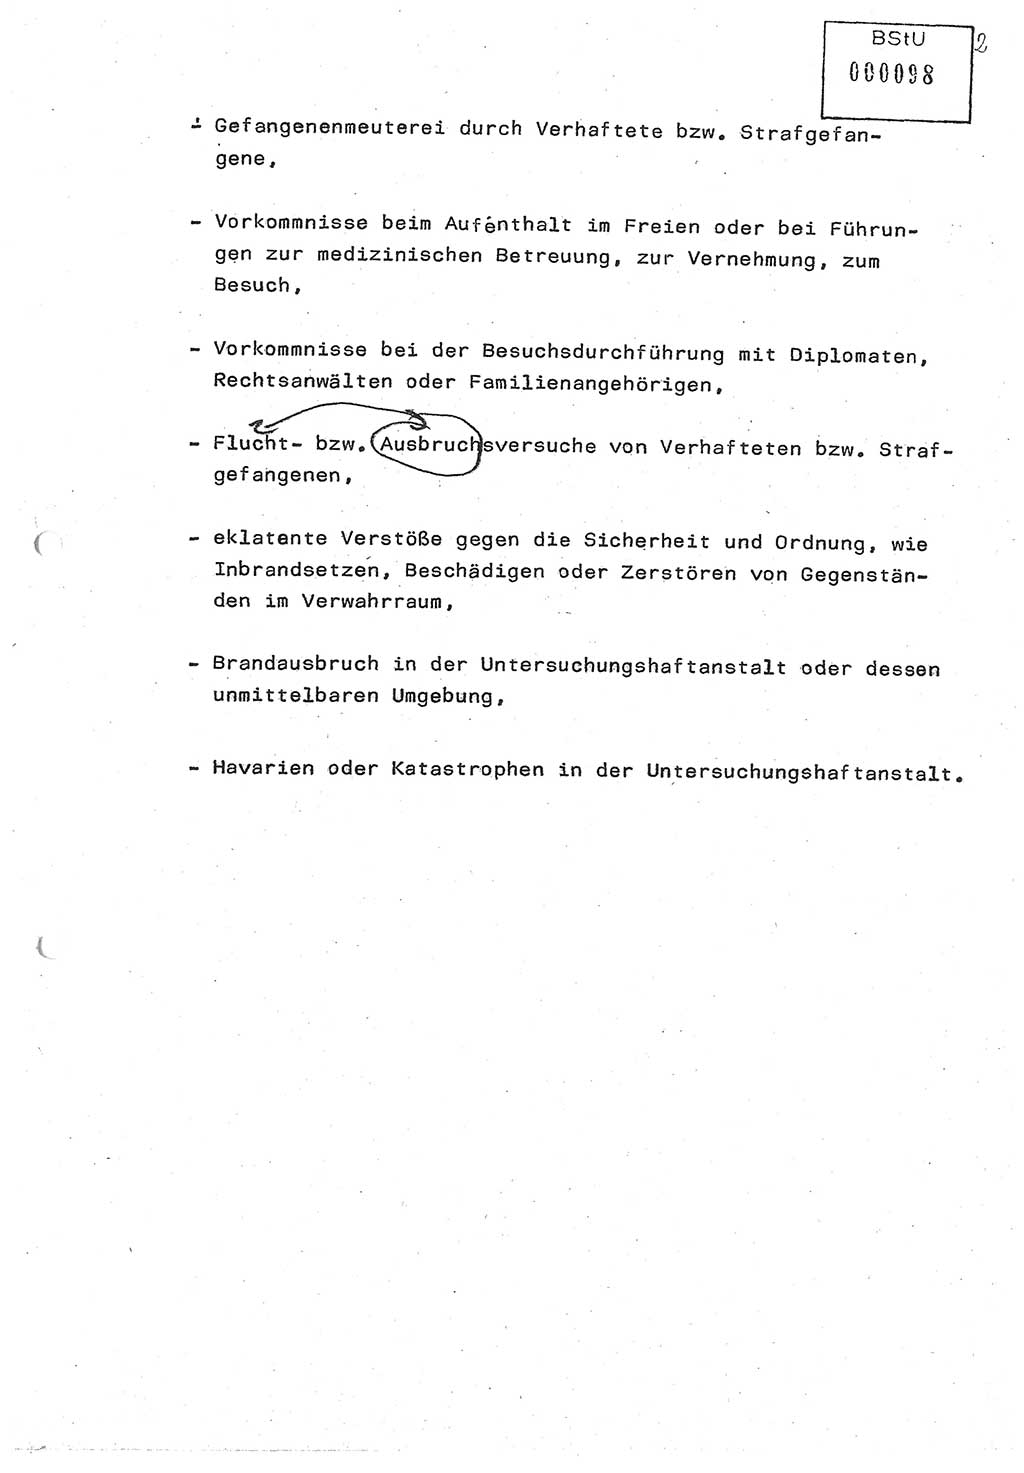 Diplomarbeit (Entwurf) Oberleutnant Peter Parke (Abt. ⅩⅣ), Ministerium für Staatssicherheit (MfS) [Deutsche Demokratische Republik (DDR)], Juristische Hochschule (JHS), Geheime Verschlußsache (GVS) o001-98/86, Potsdam 1986, Seite 98 (Dipl.-Arb. MfS DDR JHS GVS o001-98/86 1986, S. 98)